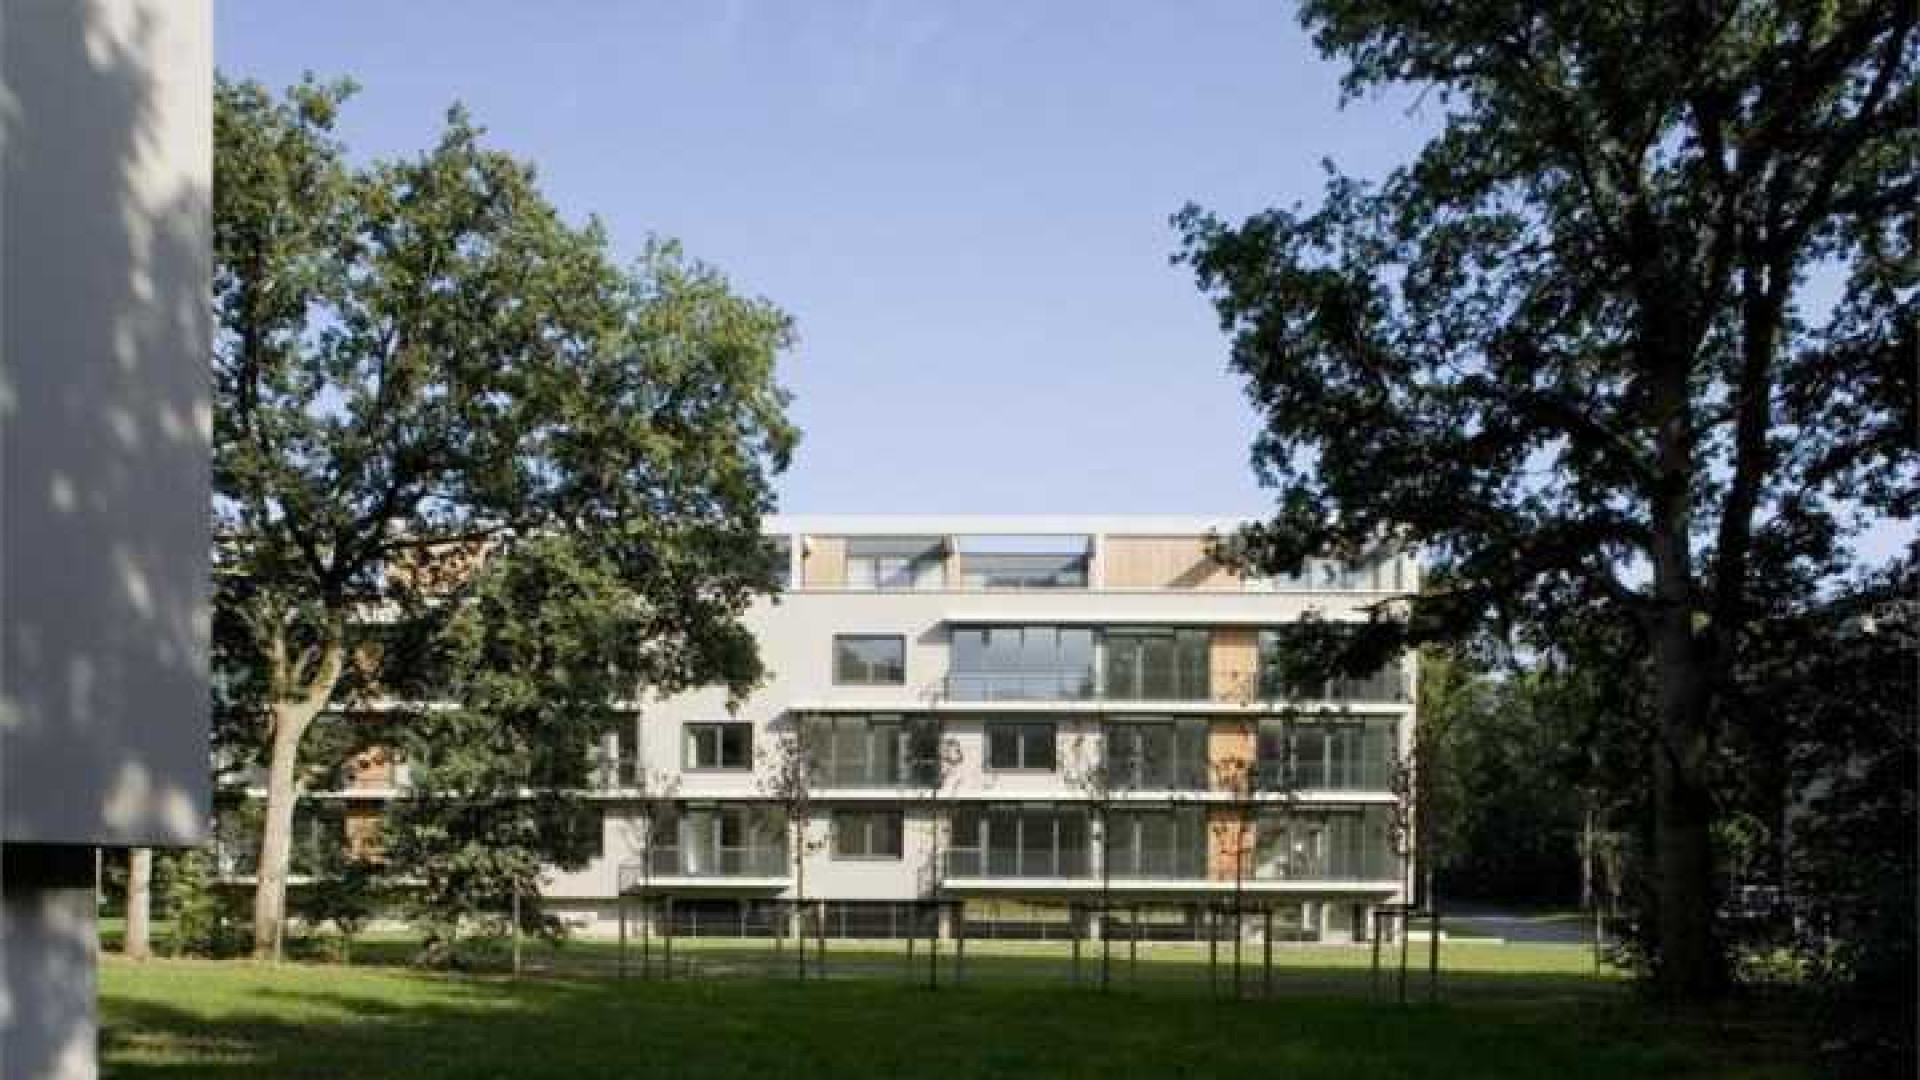 Ilse de Lange huurt luxe penthouse in Hilversum. Zie foto's